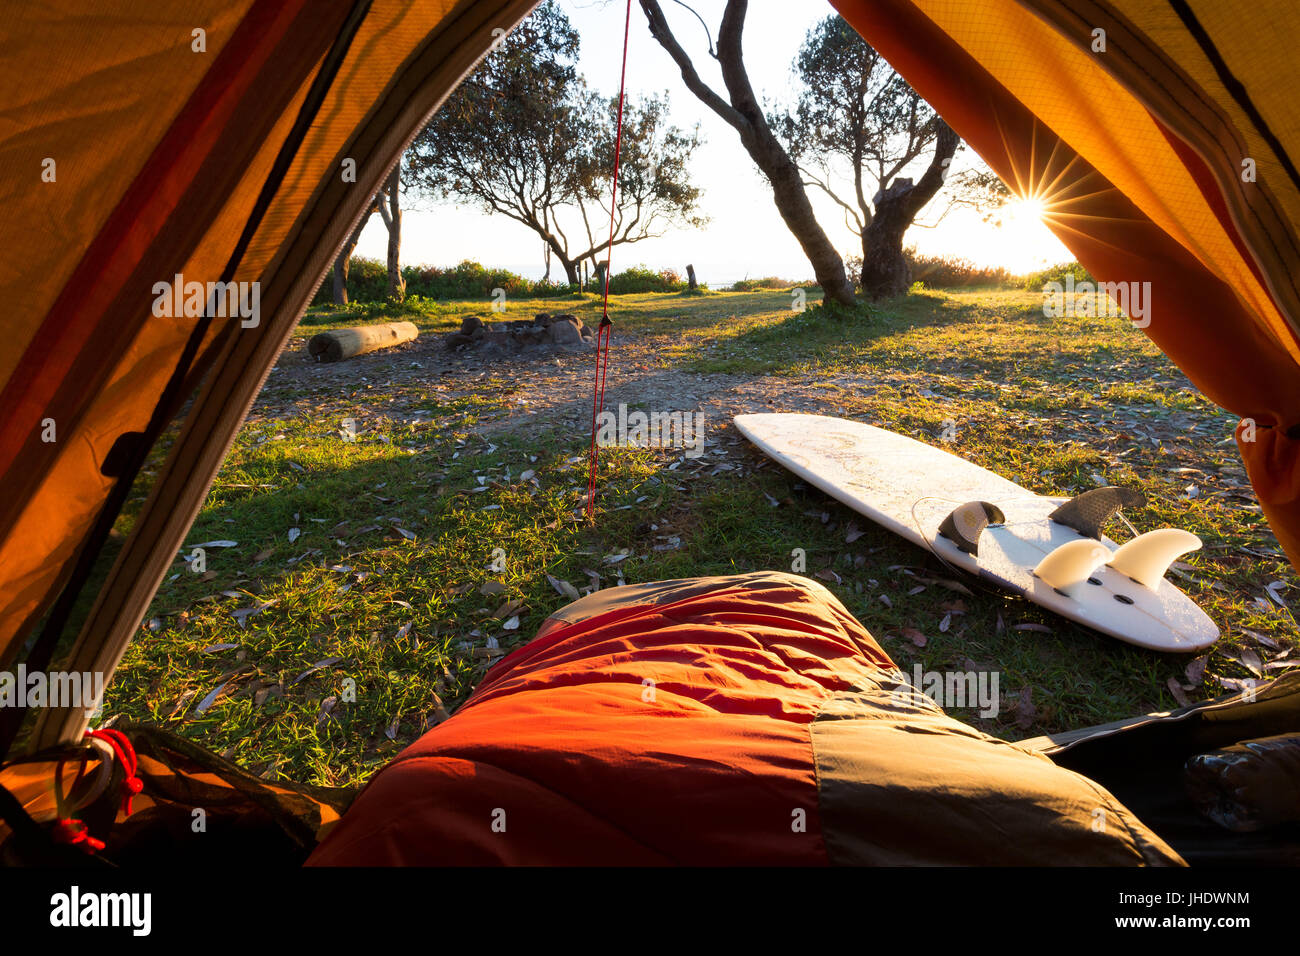 Una persona in un sacco a pelo con un bel punto di vista da una tenda come la luce del mattino illumina il campeggio e la circonda. Foto Stock